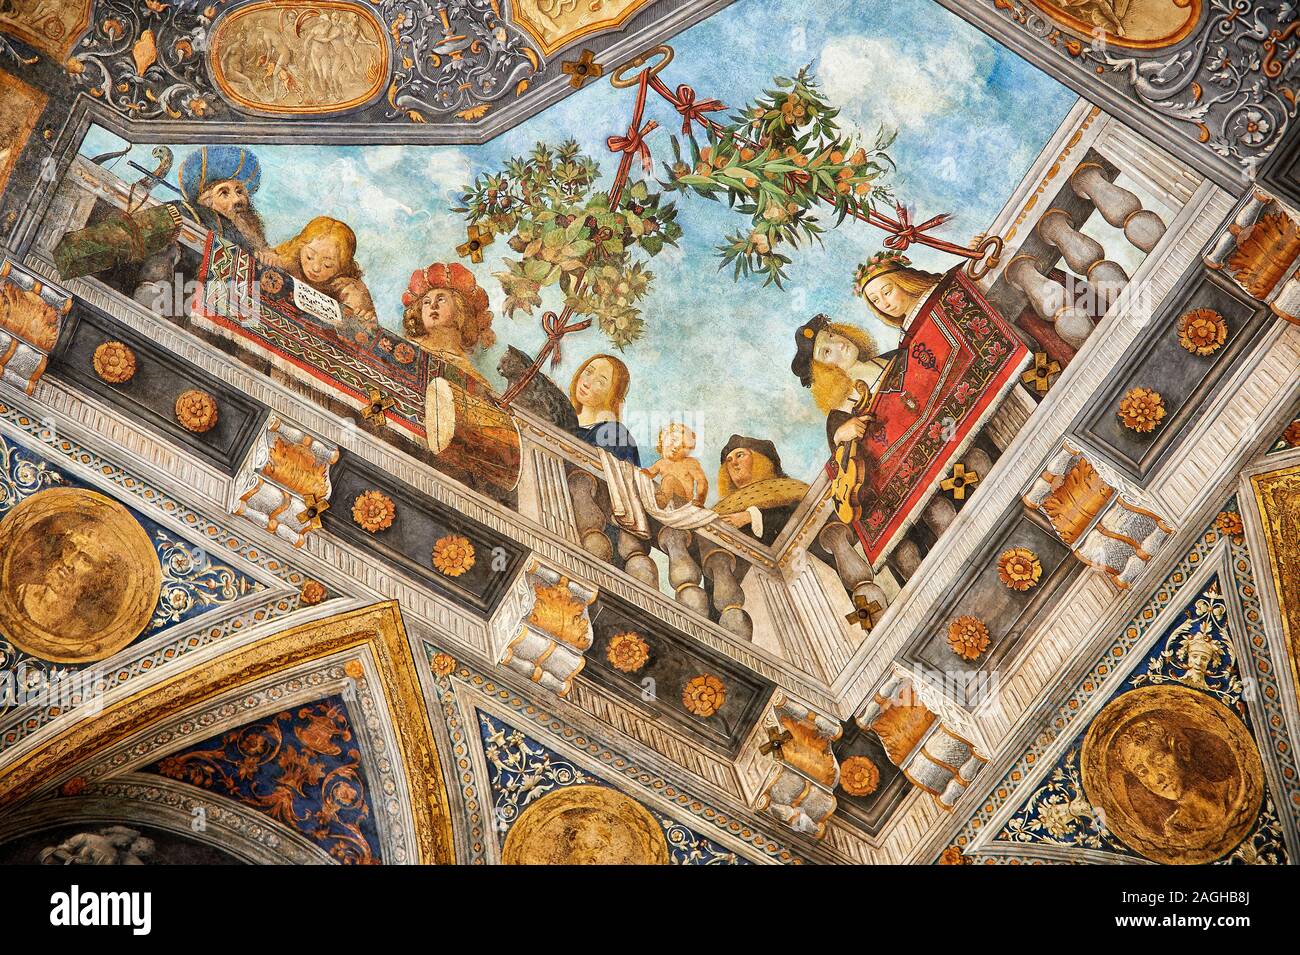 Renaissance trompe-l'oeil-Decke Fresken, die Schatzkammer der Renaissance Malerei, Palazzo Costabili, Archäologisches Museum, Ferrara Stockfoto